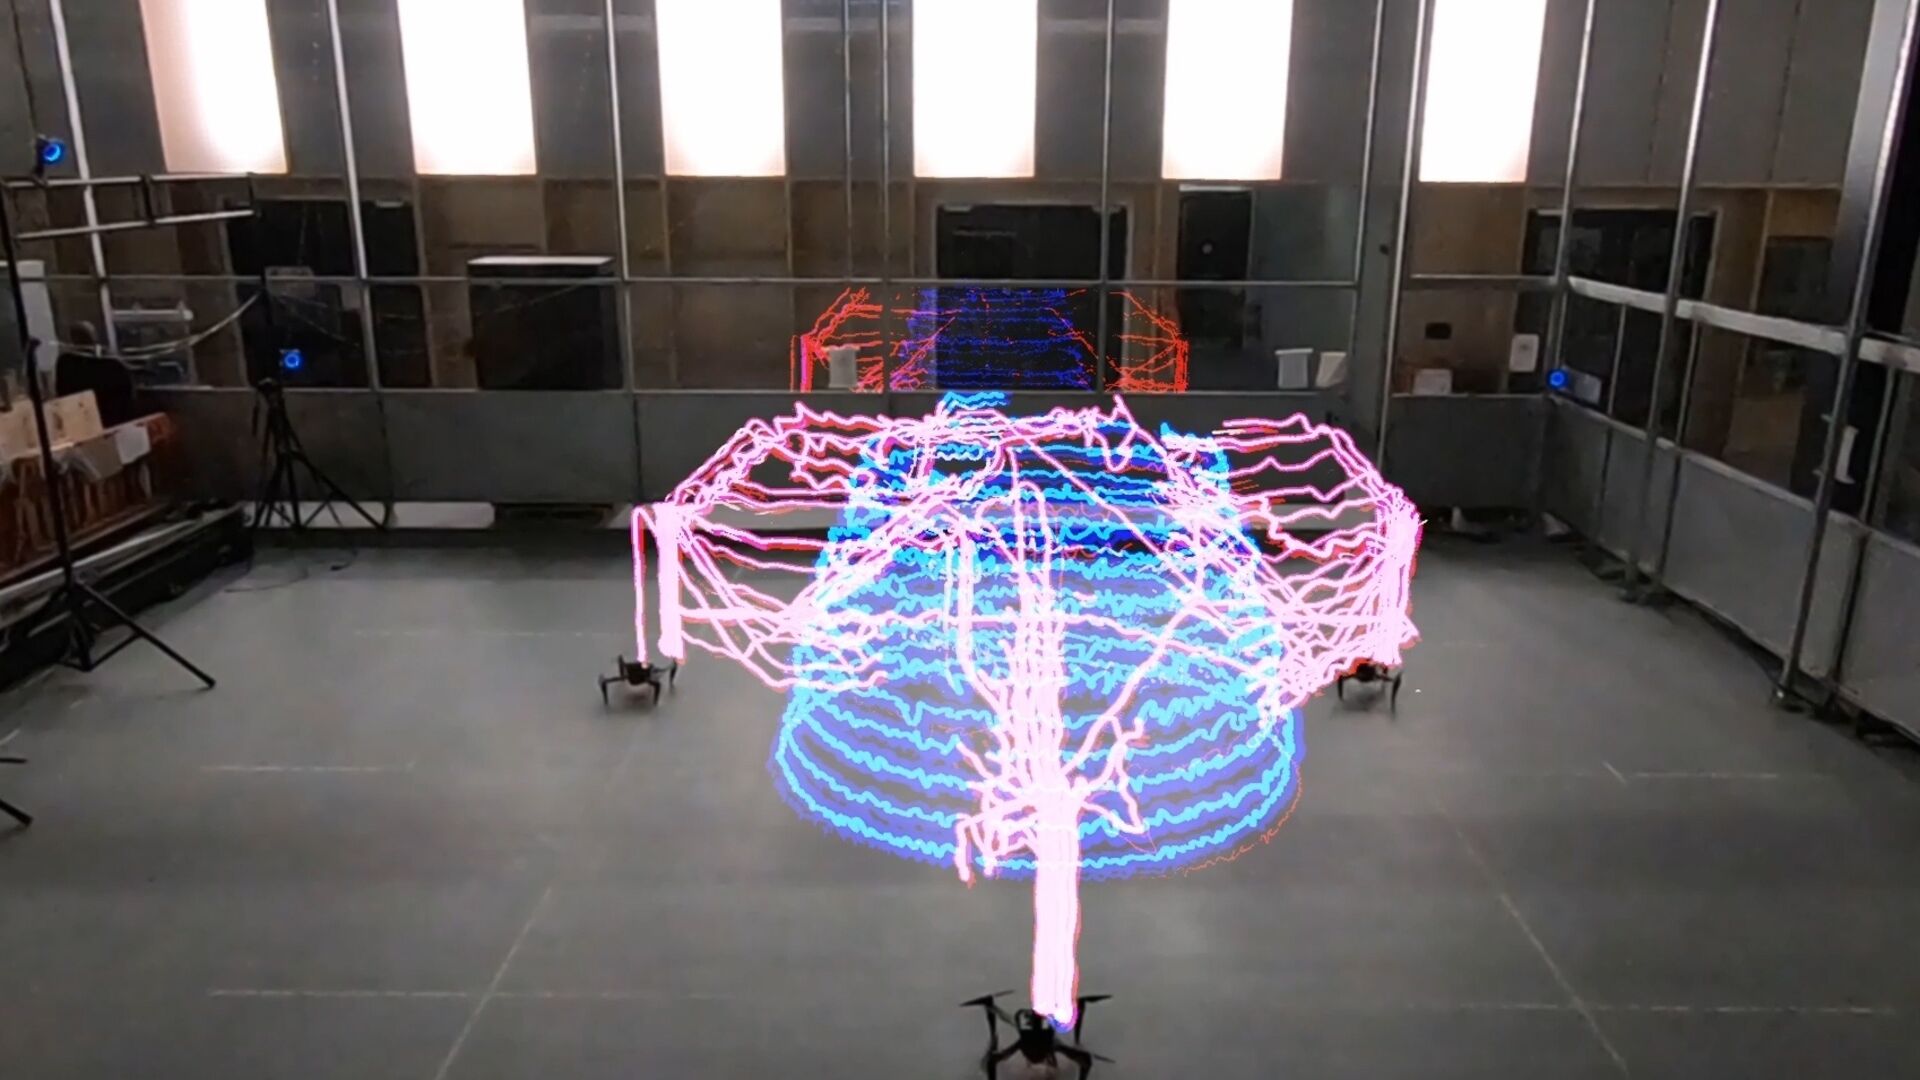 Droni collaborativi: una traccia luminosa in timelapse che dimostra la coordinazione multi-agente del team di robot Aerial AM